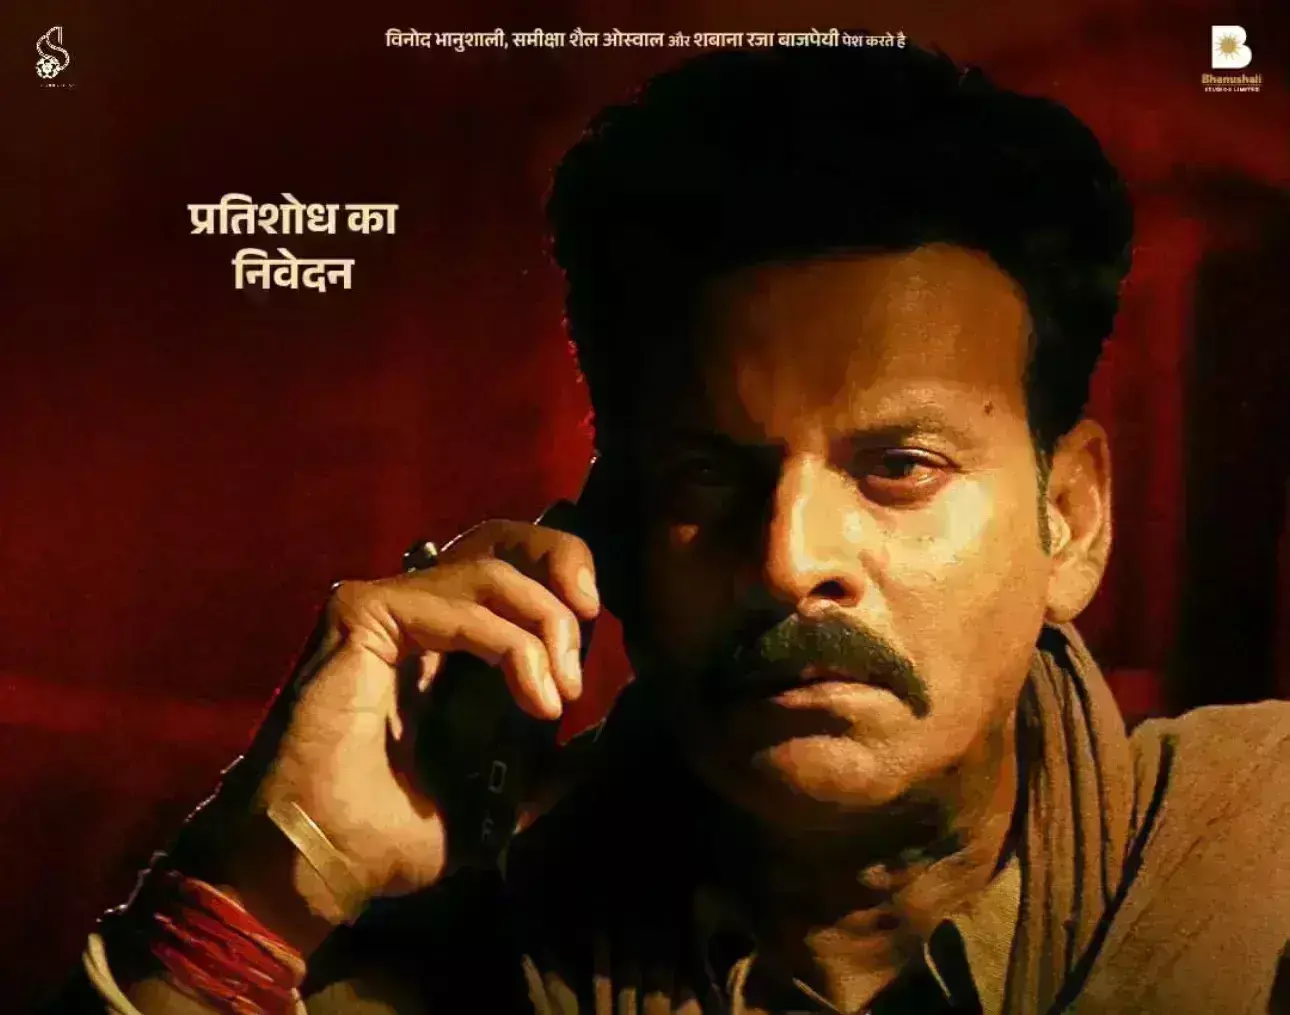 भैया जी के नए पोस्टर में खतरनाक अंदाज में दिखे मनोज बाजपेयी, 24 मई को सिनेमाघरों में देगी दस्तक